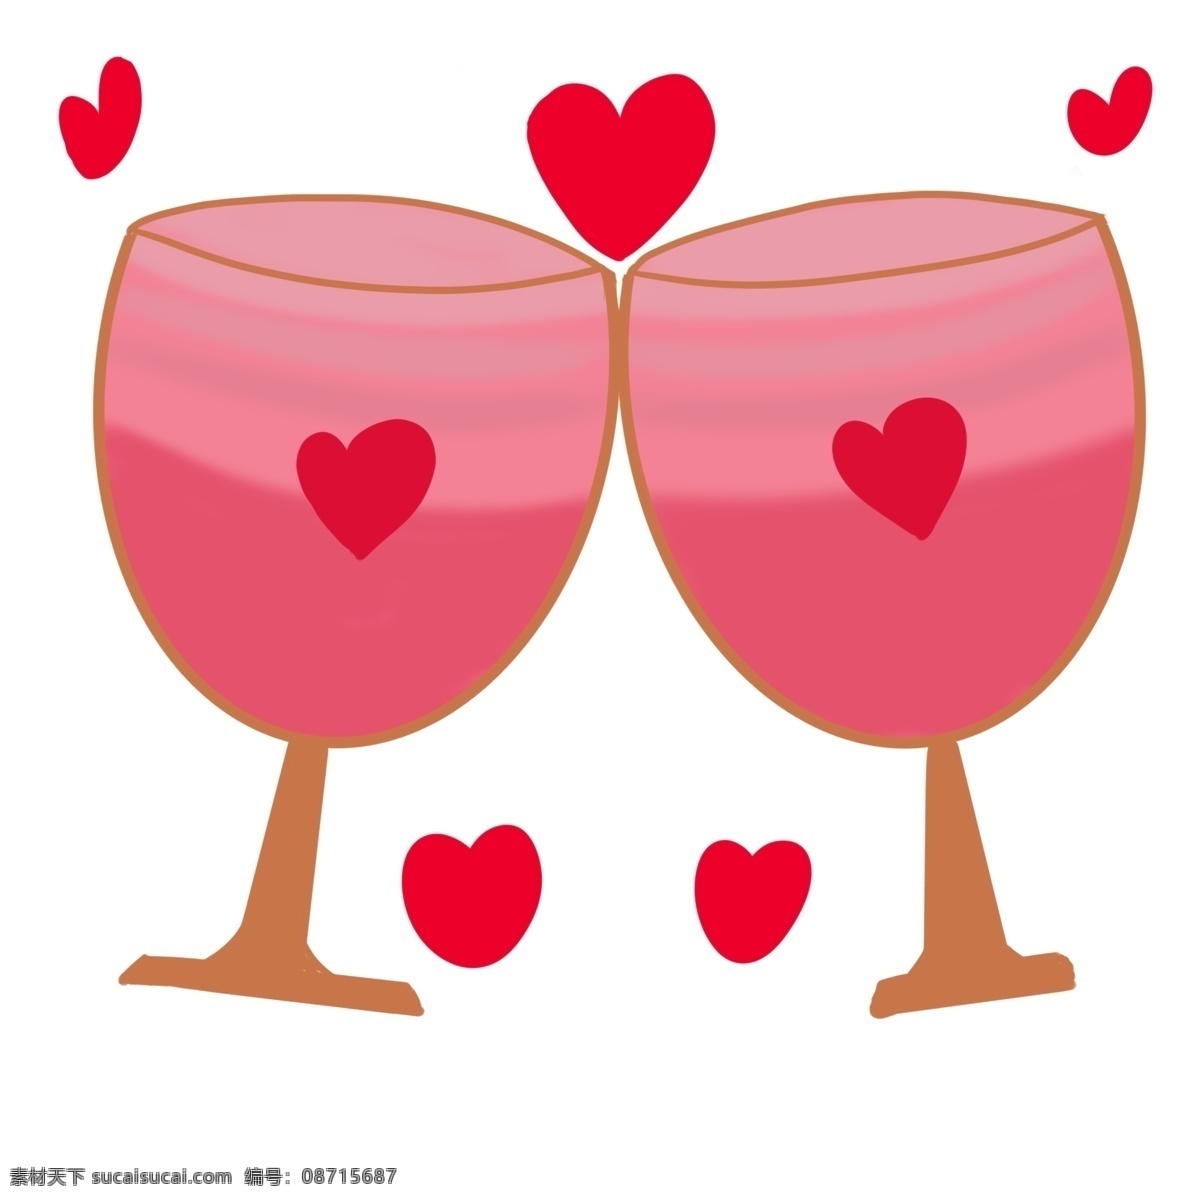 情人节 粉色 酒杯 插画 粉色的酒杯 情人节酒杯 红色心形 爱情 浪漫酒杯 卡通酒杯 一对酒杯插画